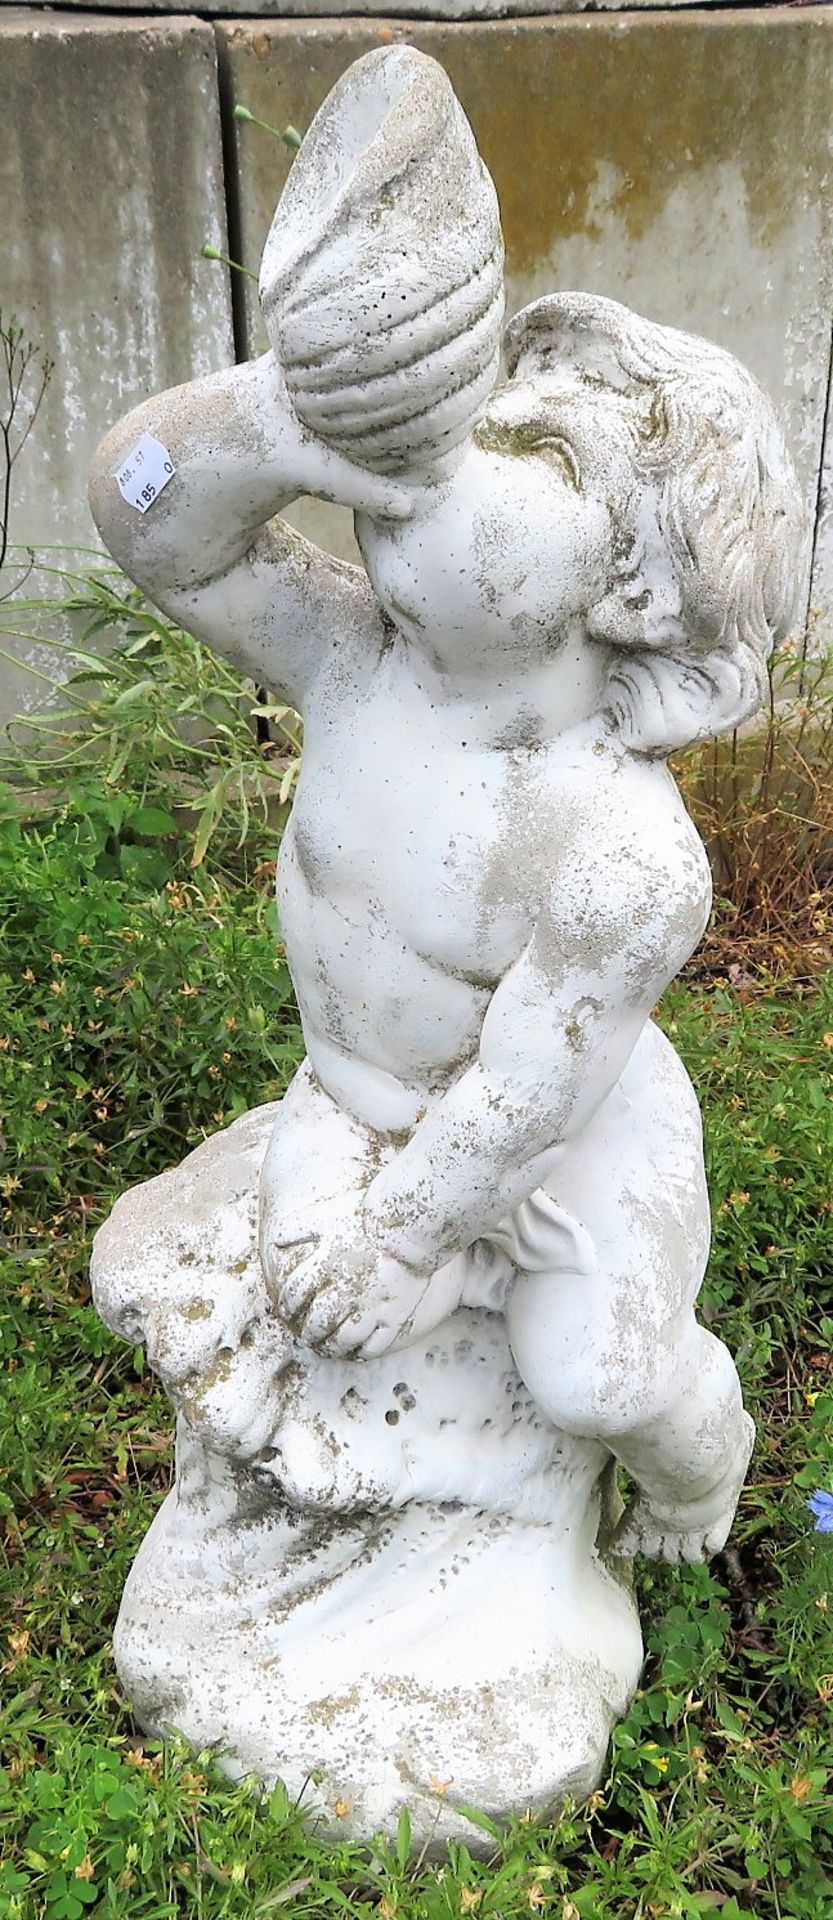 Gartenskulptur, Wasserspeier, Betonguss, h 71 cm, d 30 cm.